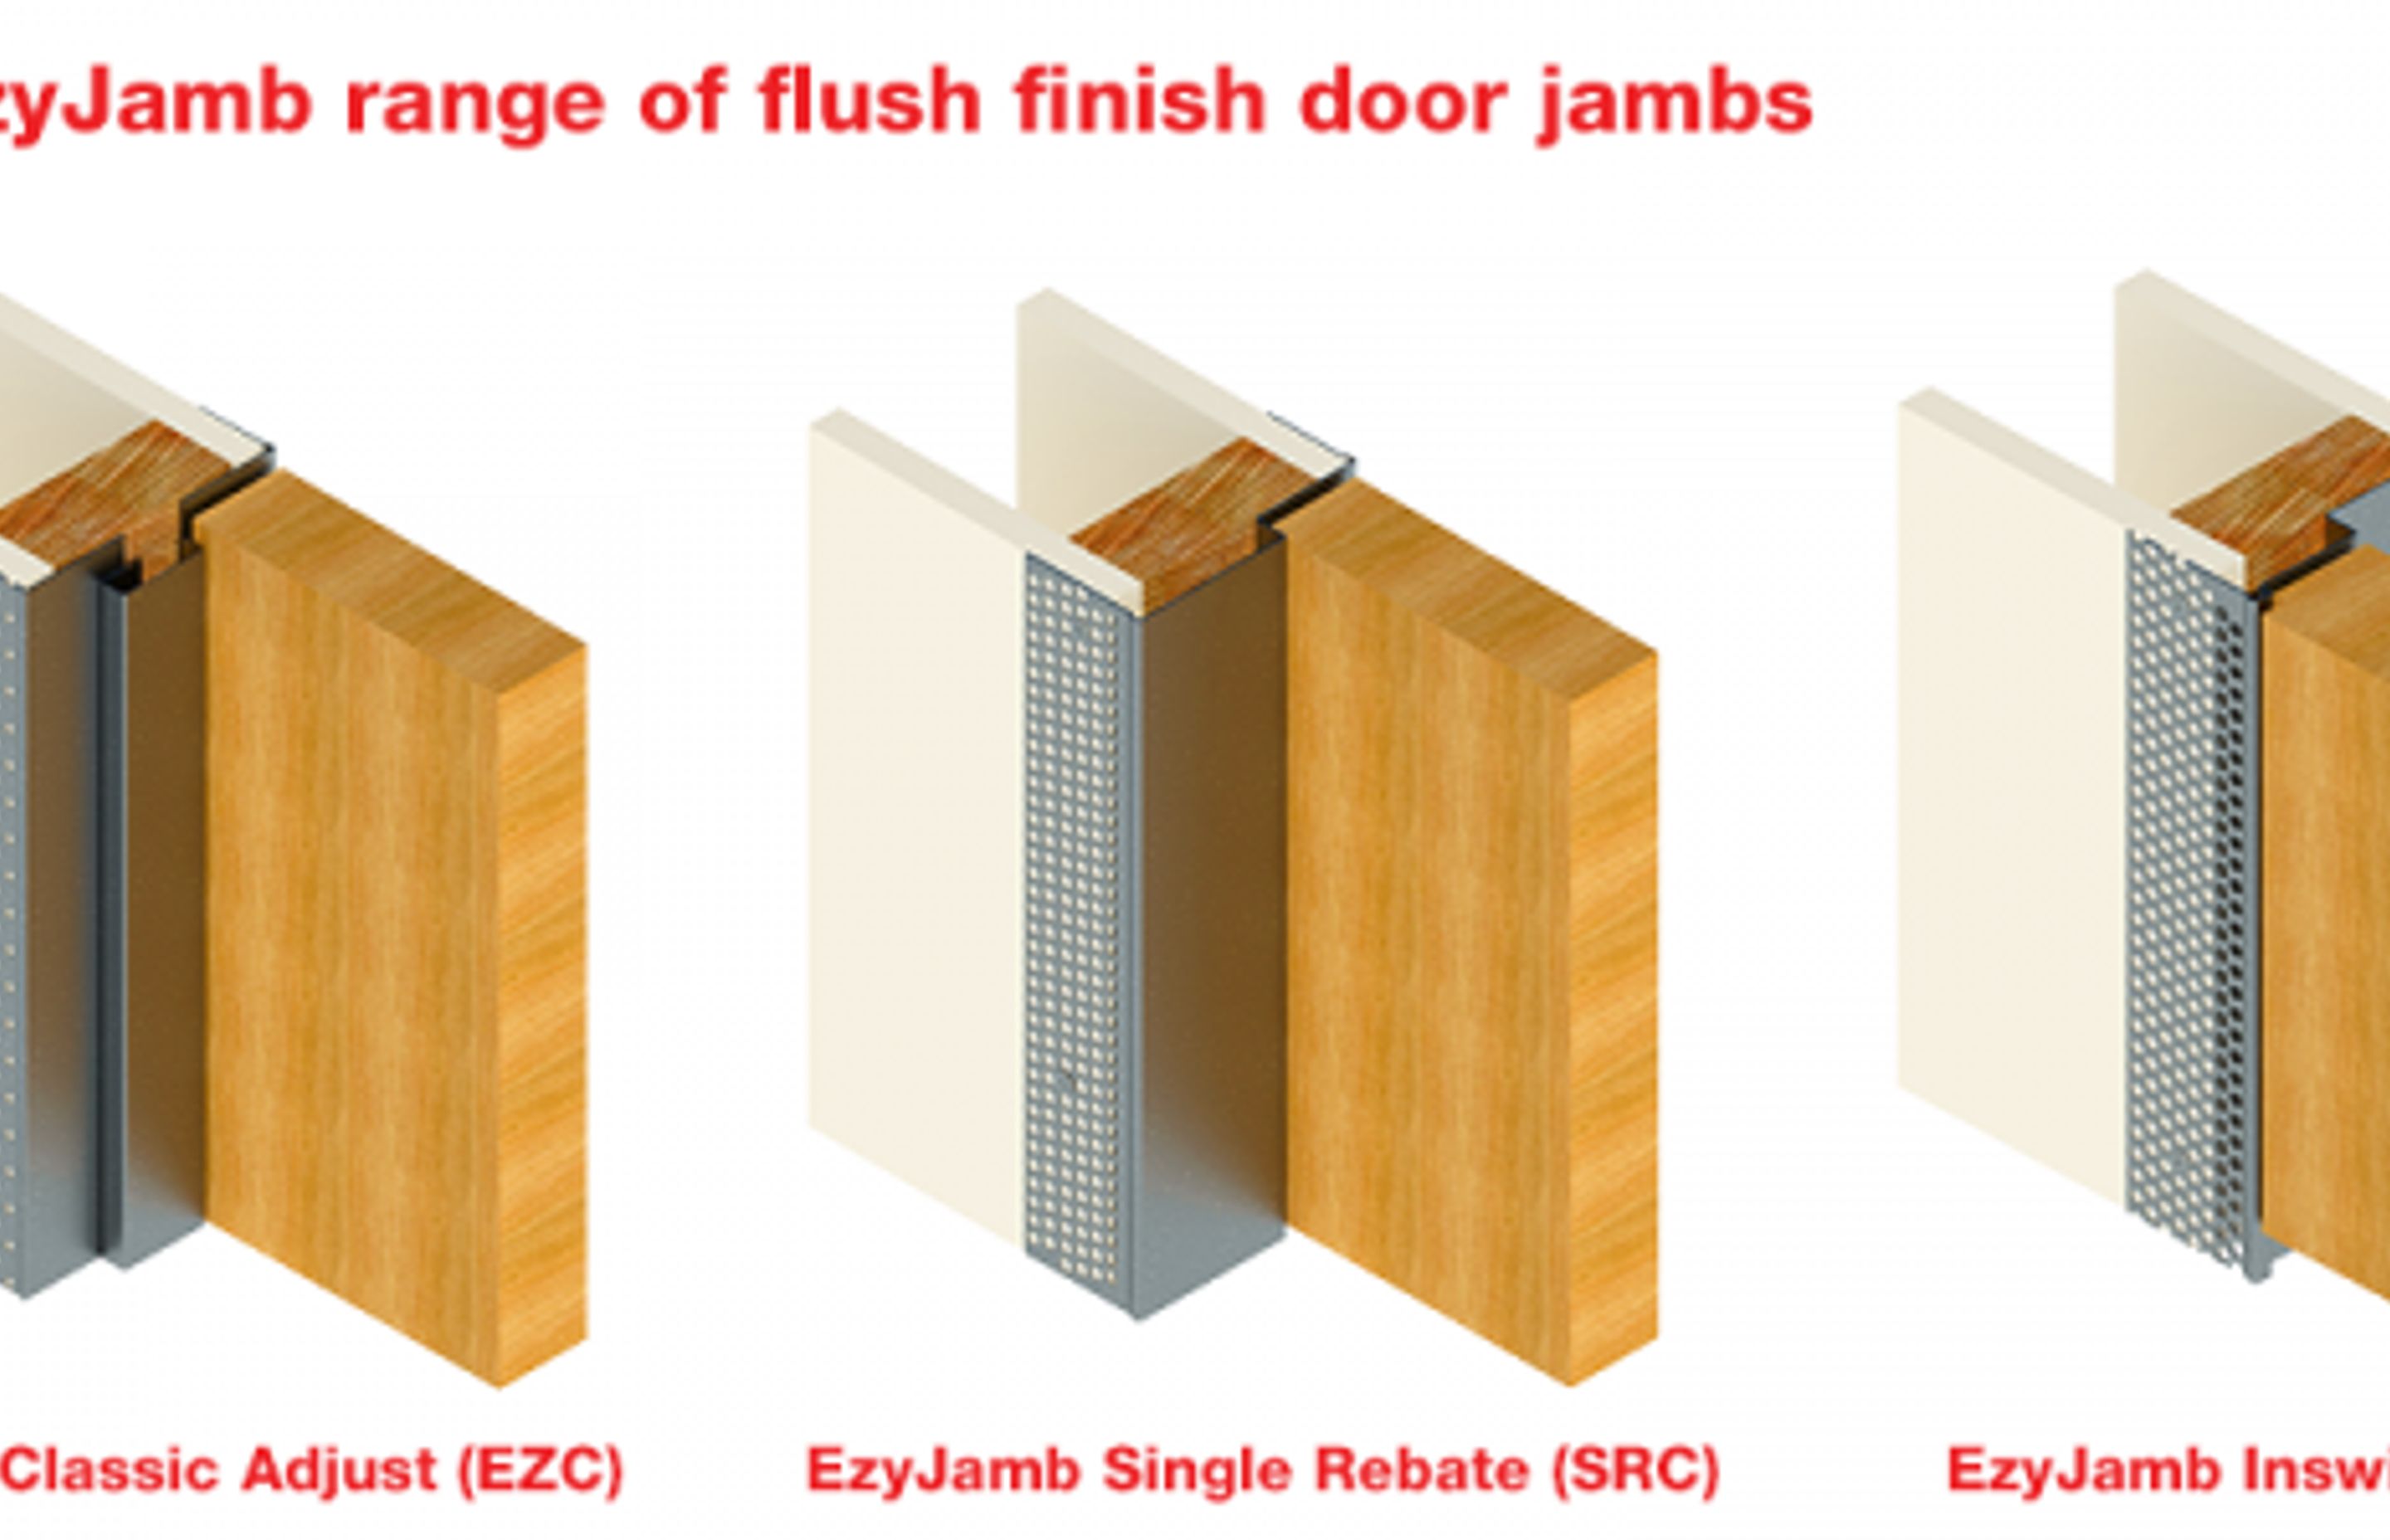 Introducing the NEW EzyJamb Inswing Door Frame (ISD)!